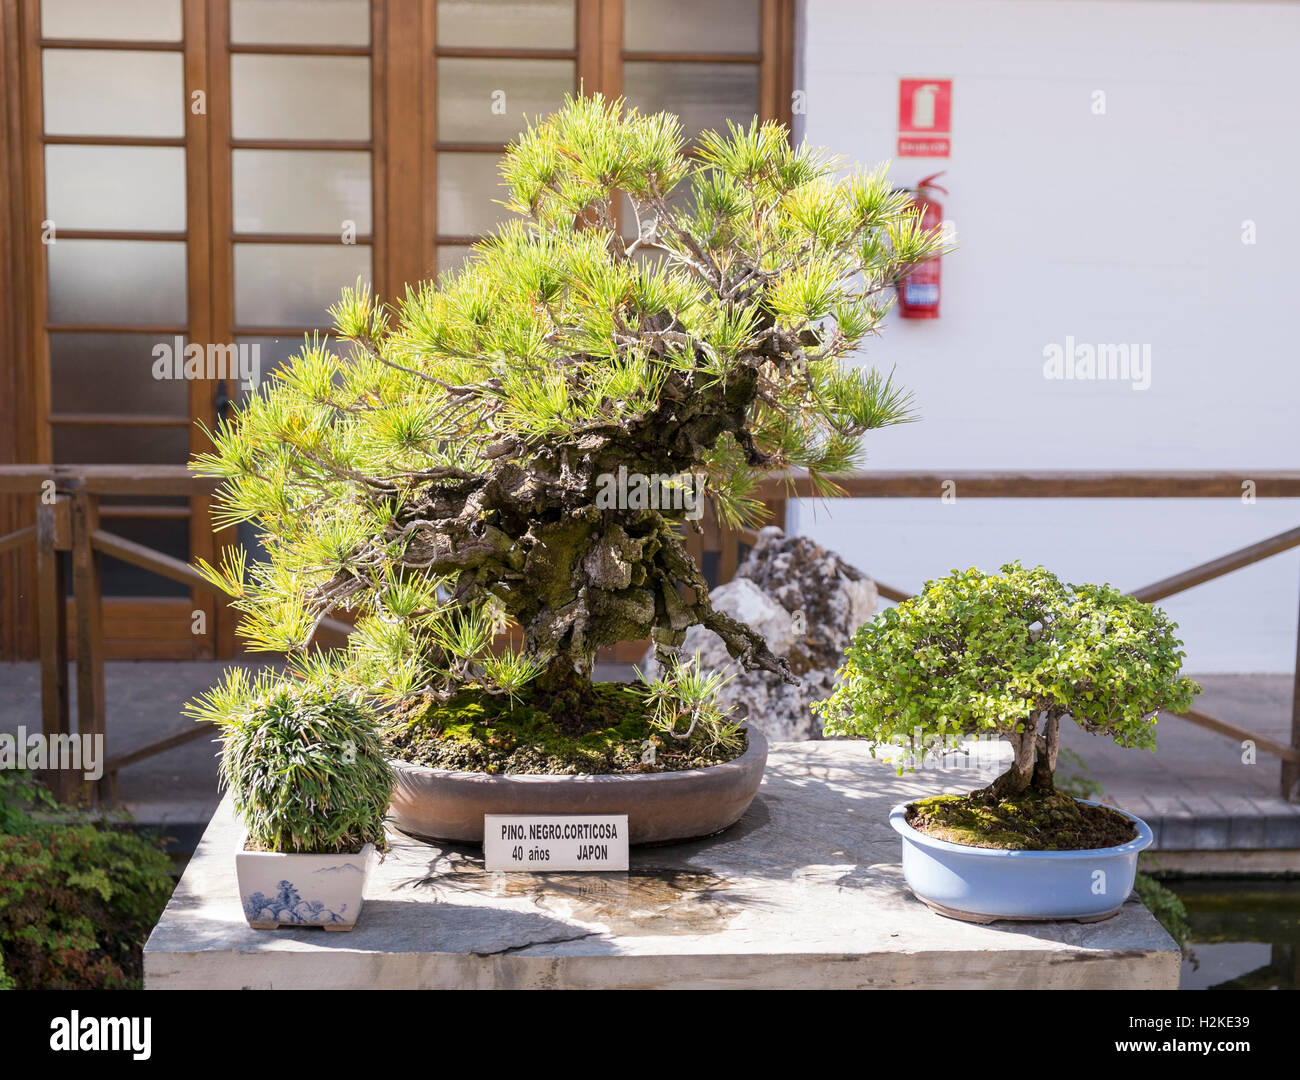 Pin noir japonais bonsai (Pinus Thumbergii). Marbella bonsai museum. La province de Málaga, Andalousie, Espagne Banque D'Images